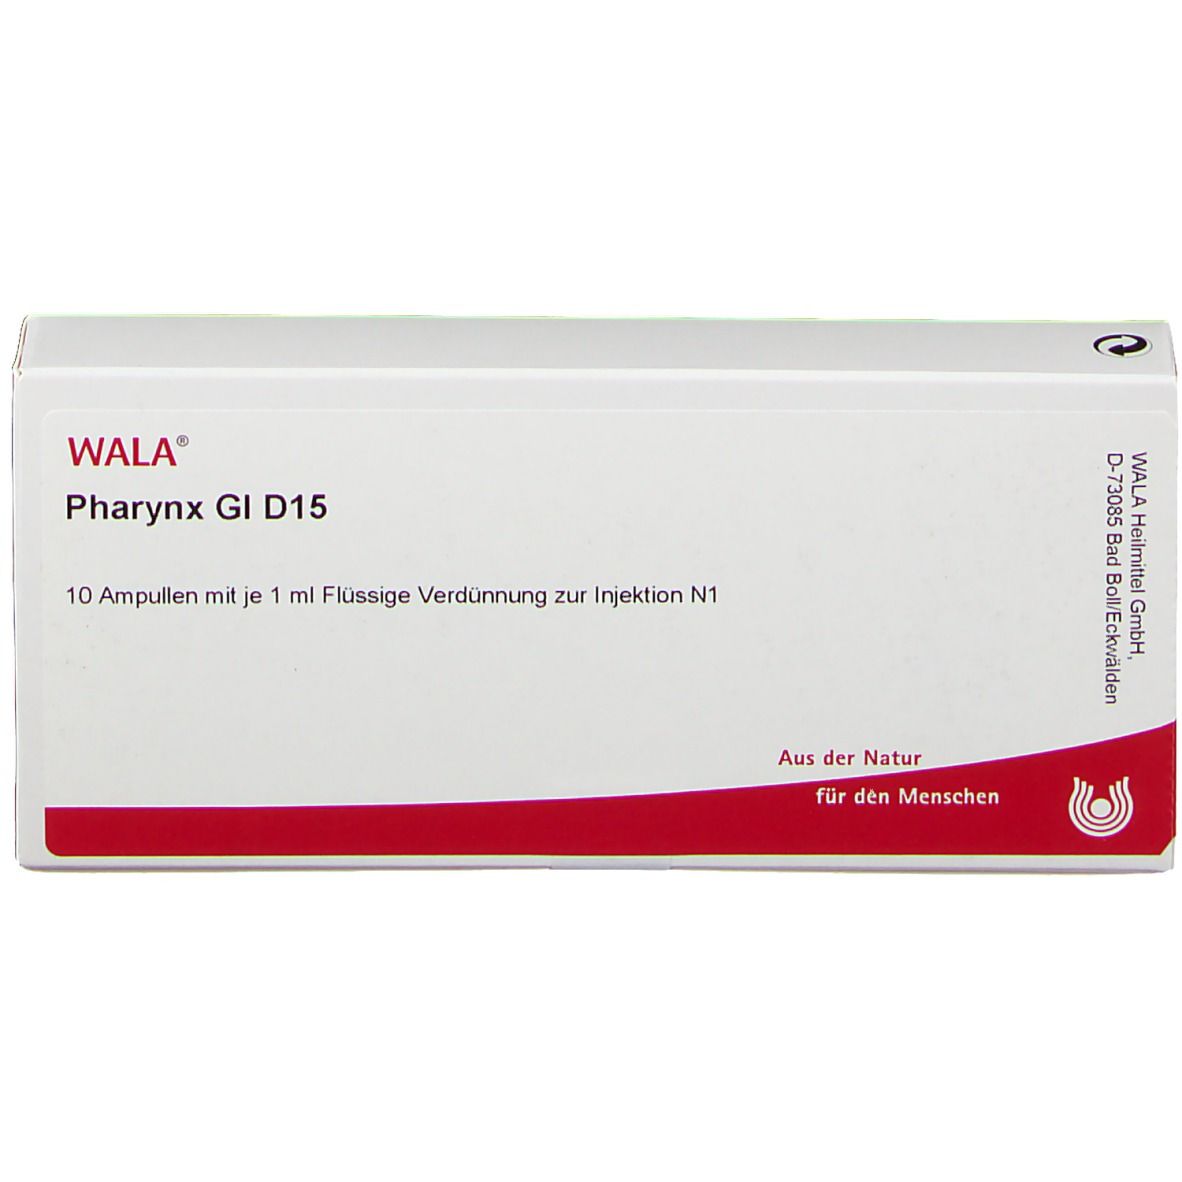 WALA® Pharynx Gl D 15